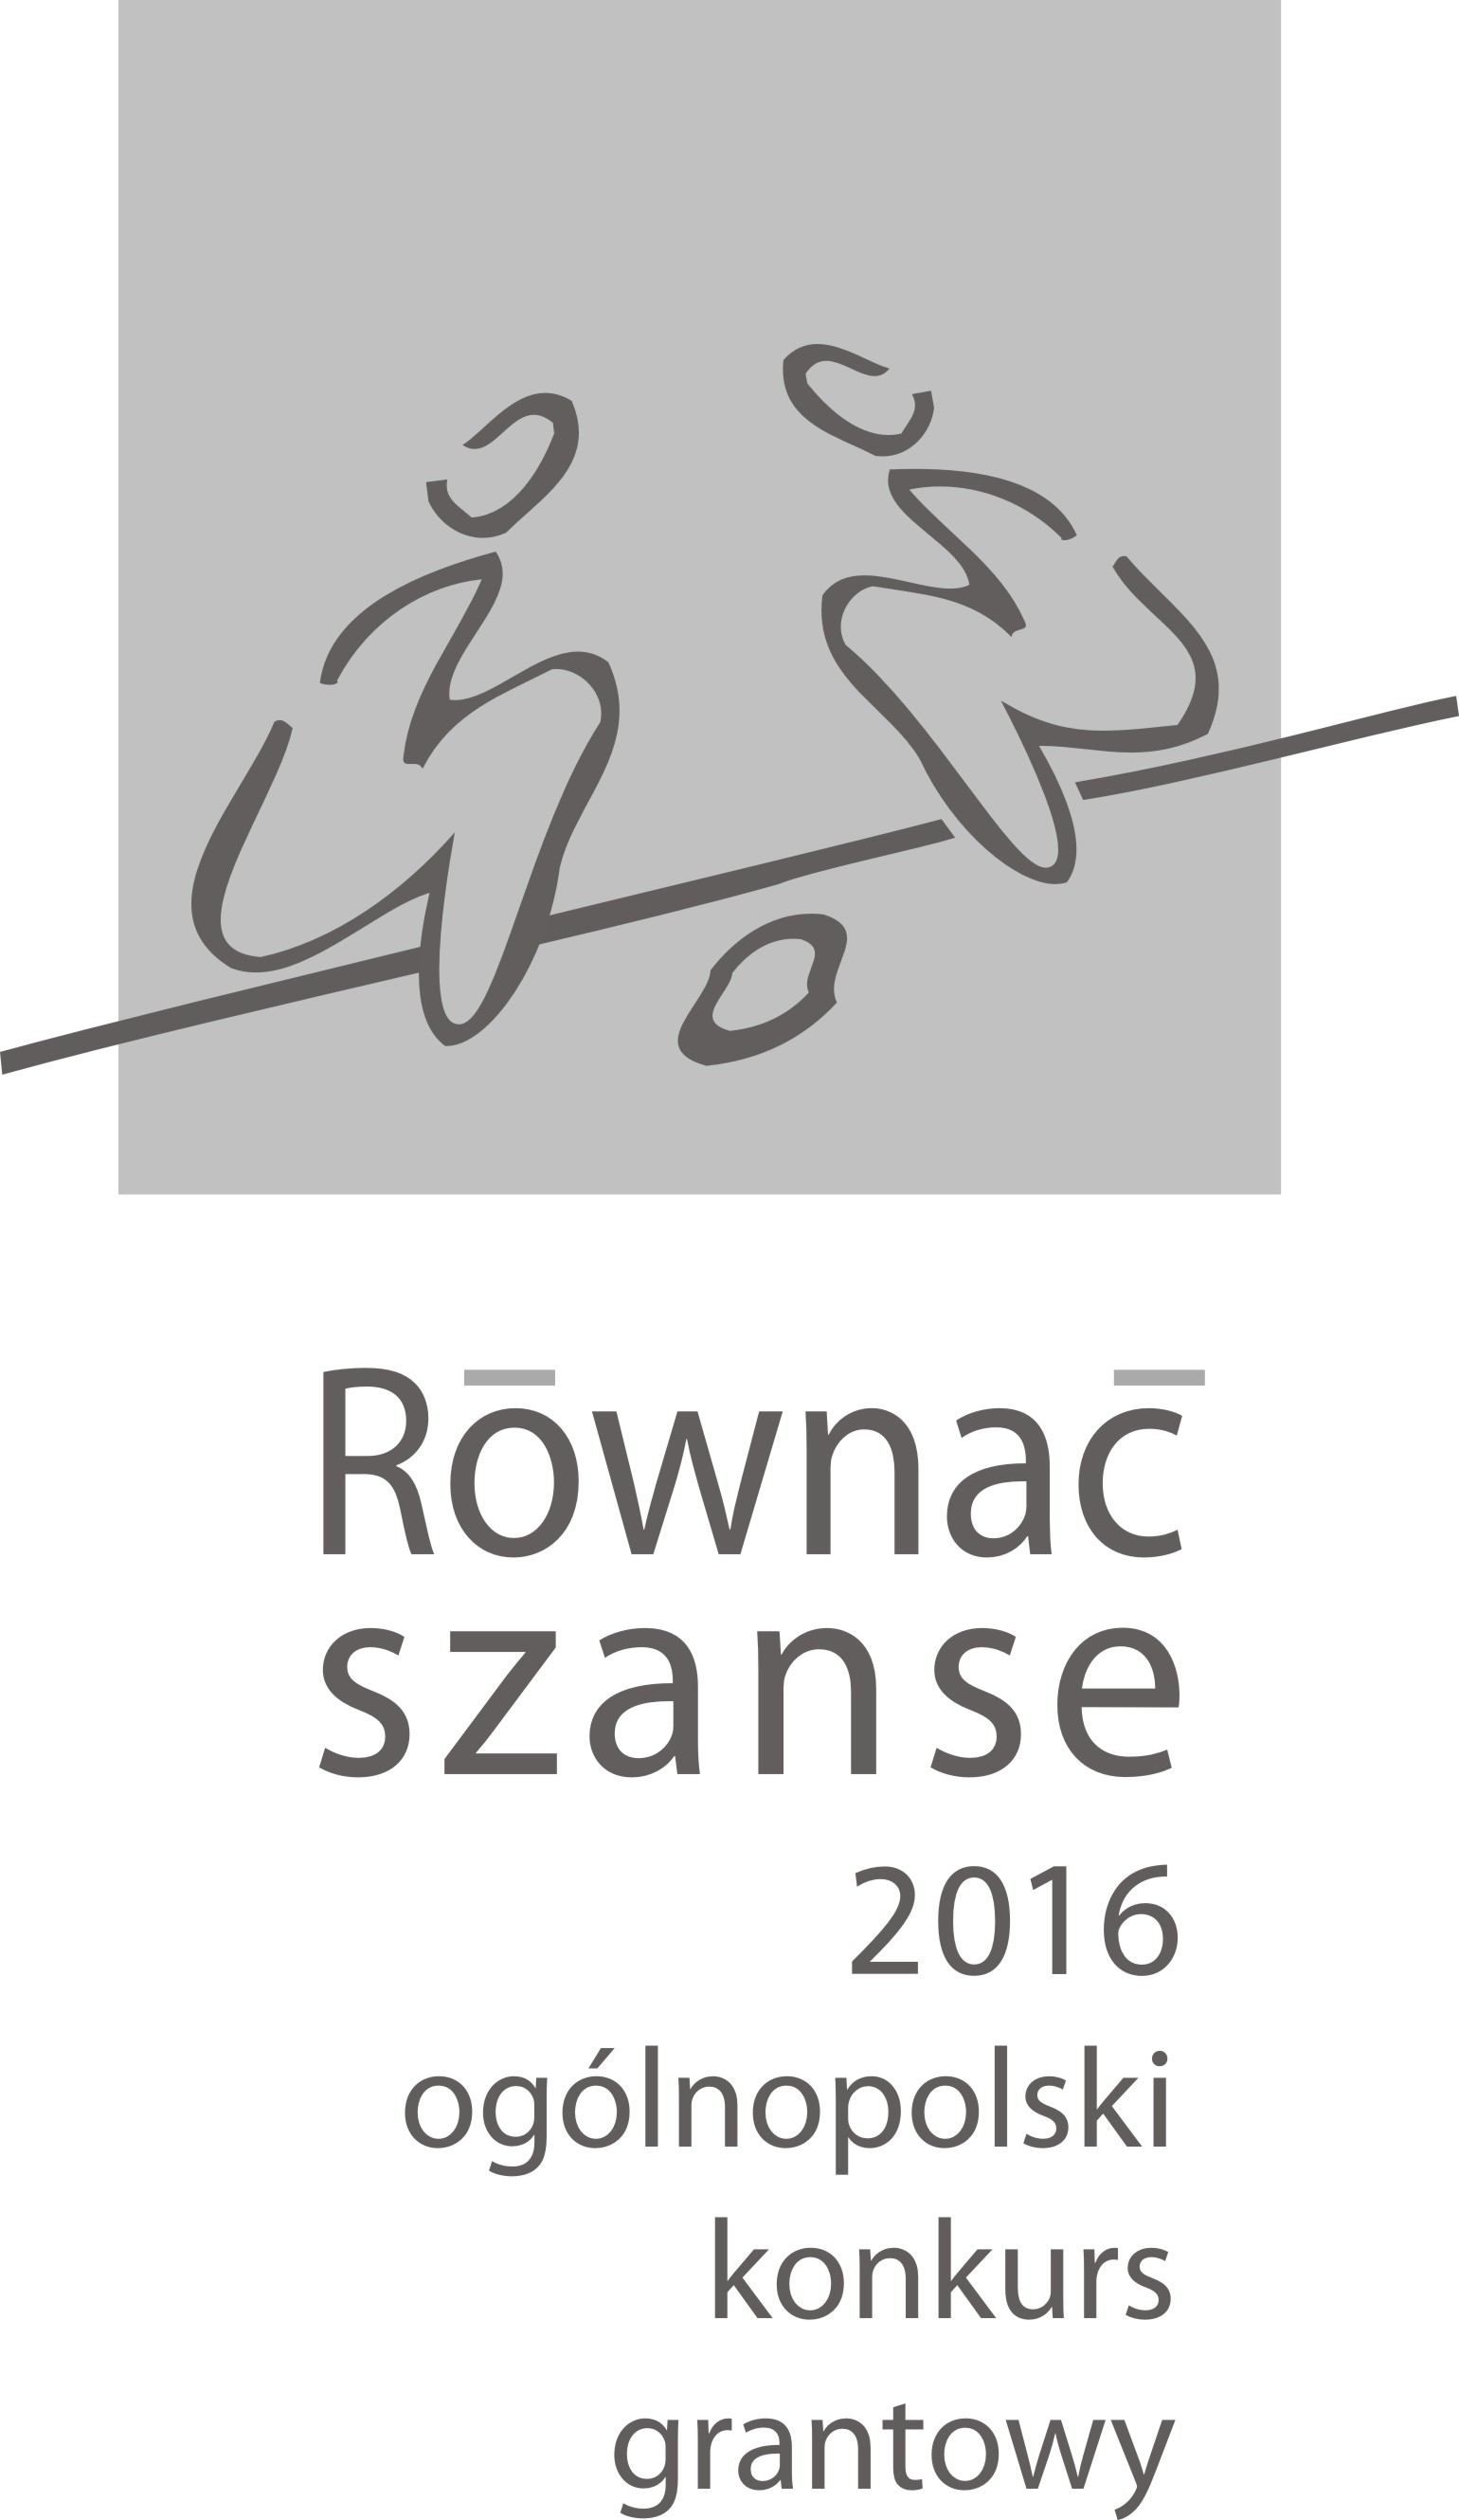 OKG RÓWNAĆ SZANSE 2016